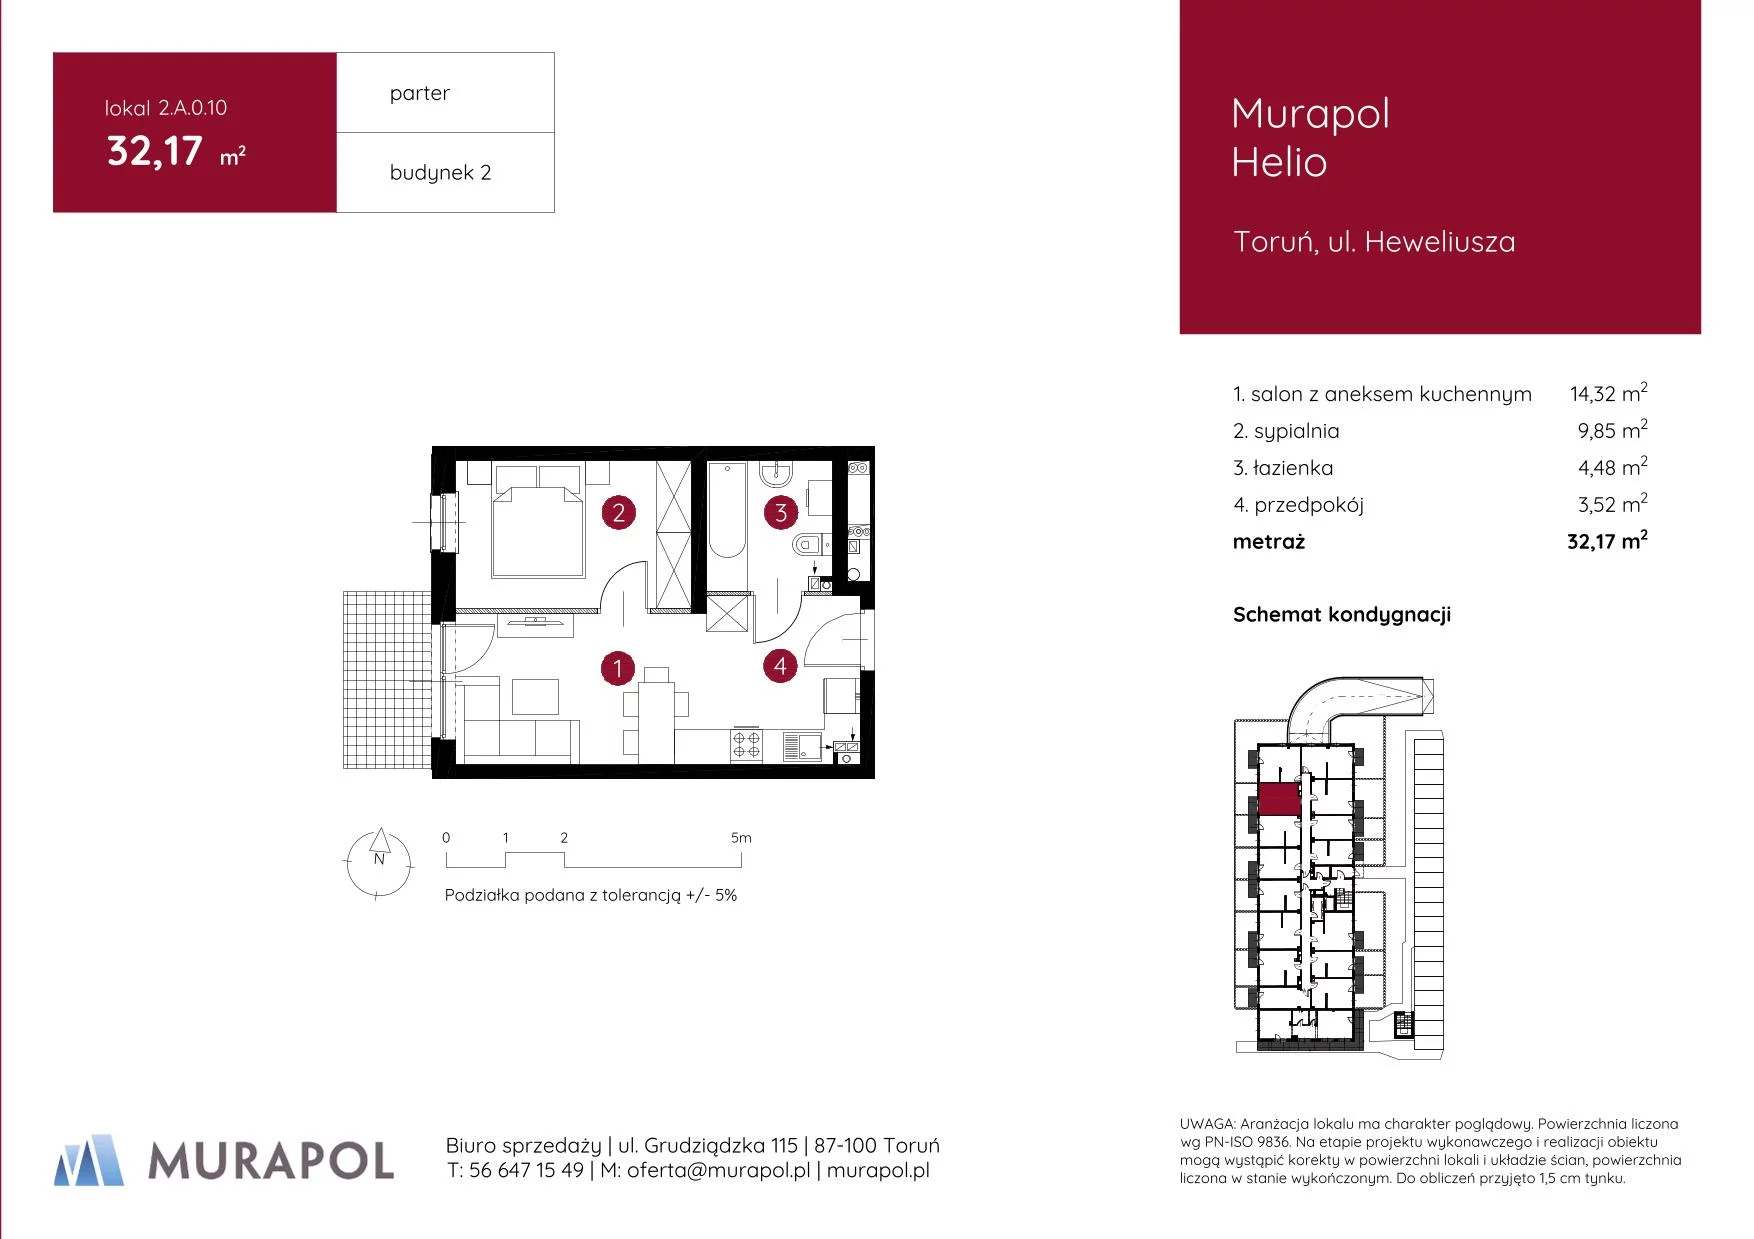 Mieszkanie 32,17 m², parter, oferta nr 2.A.0.10, Murapol Helio, Toruń, Wrzosy, JAR, ul. Heweliusza